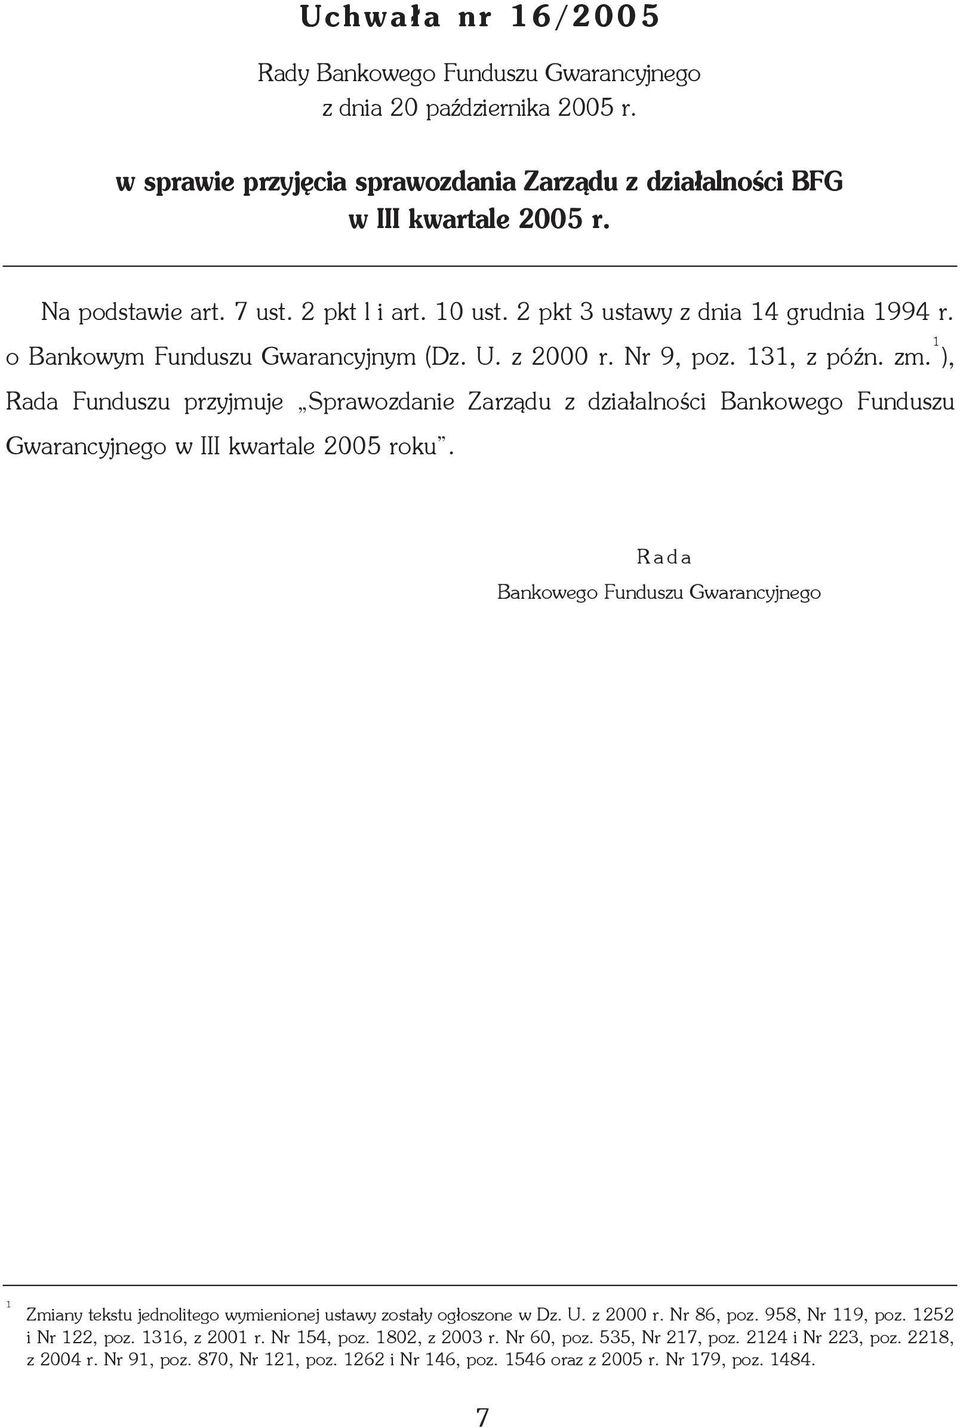 1 ), Rada Funduszu przyjmuje Sprawozdanie Zarz¹du z dzia³alnoœci Bankowego Funduszu Gwarancyjnego w III kwartale 2005 roku.